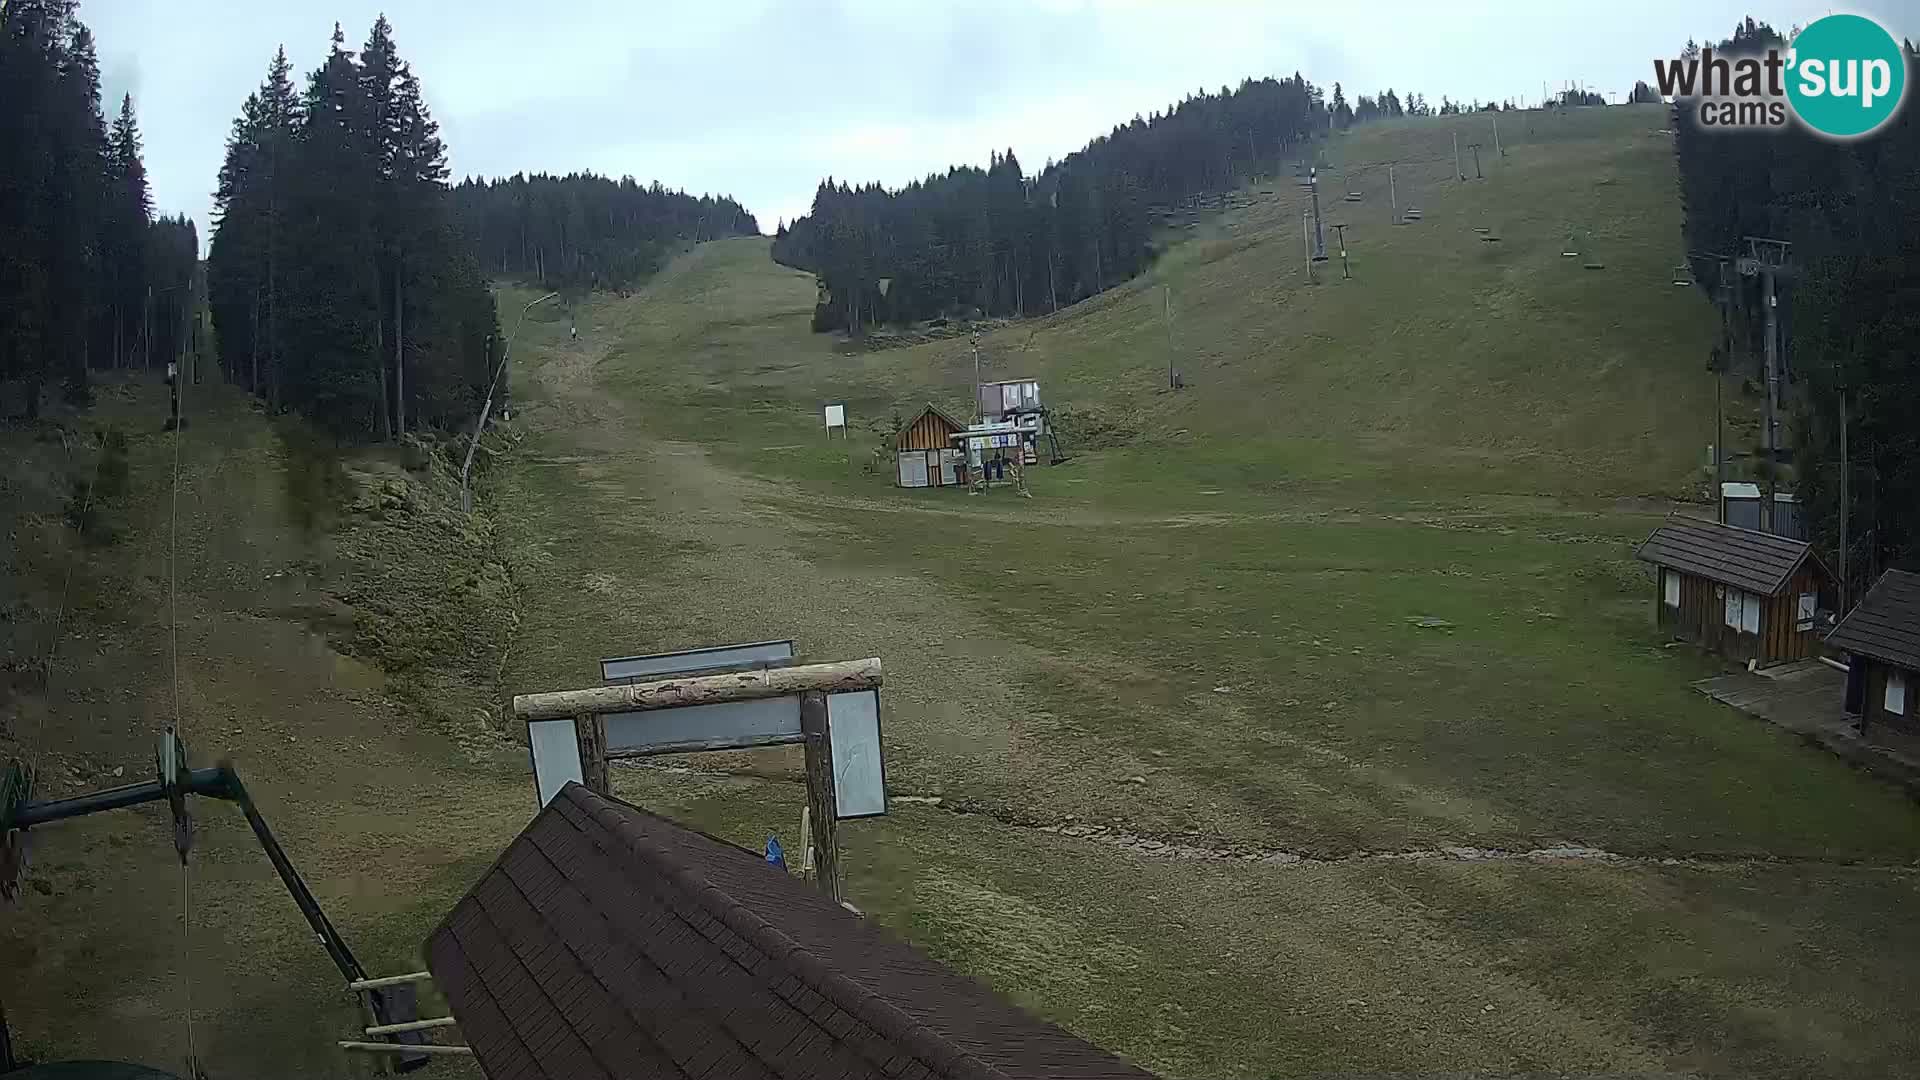 Rogla ski resort – Planja, Košuta, Jasa